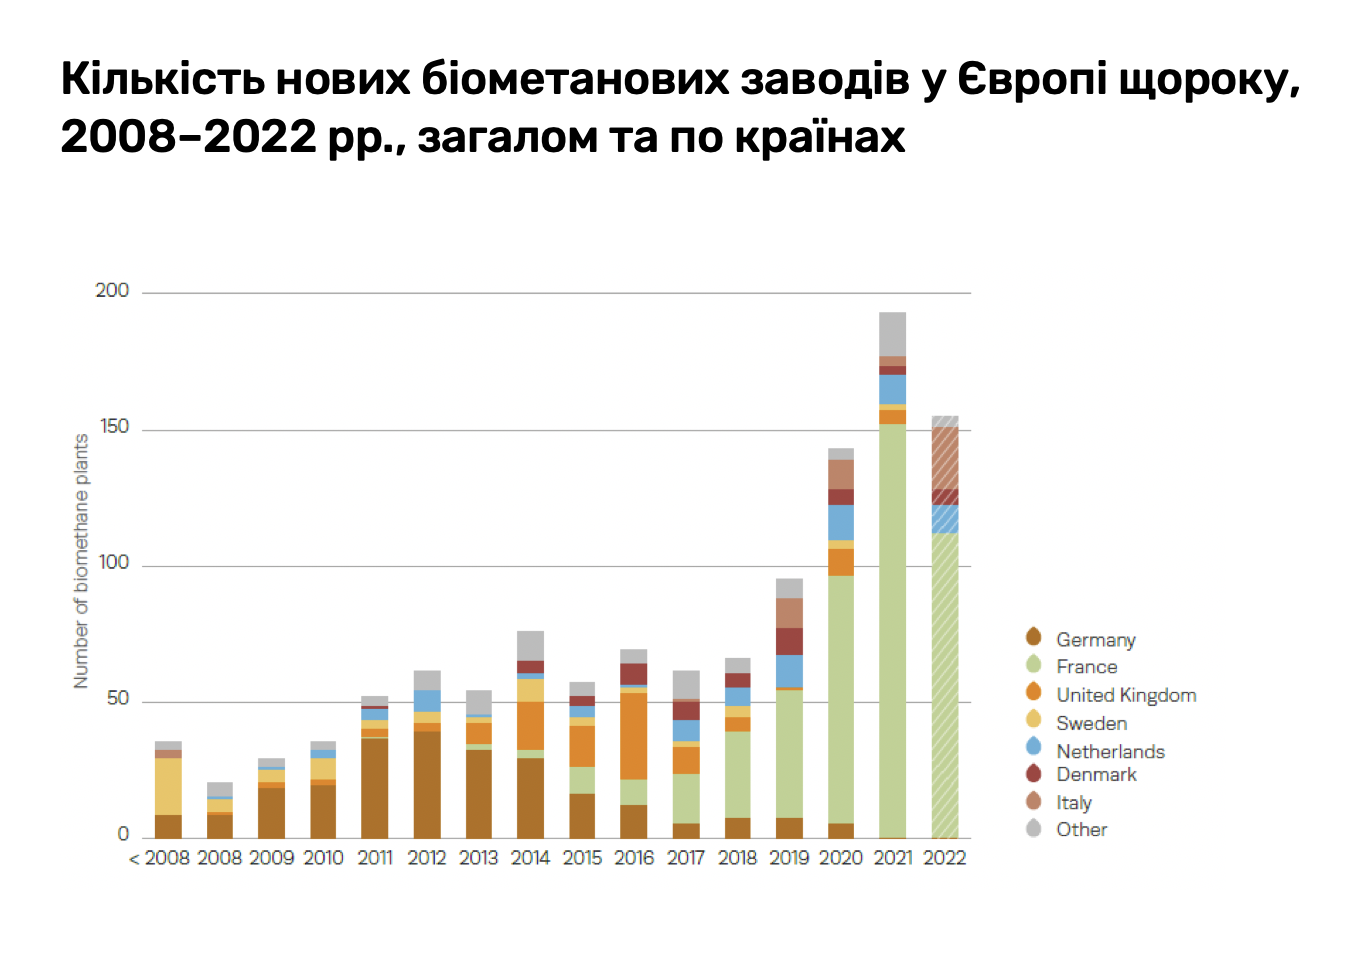 Відносне використання різних типів сировини для виробництва біогазу в окремих європейських країнах у 2021 році